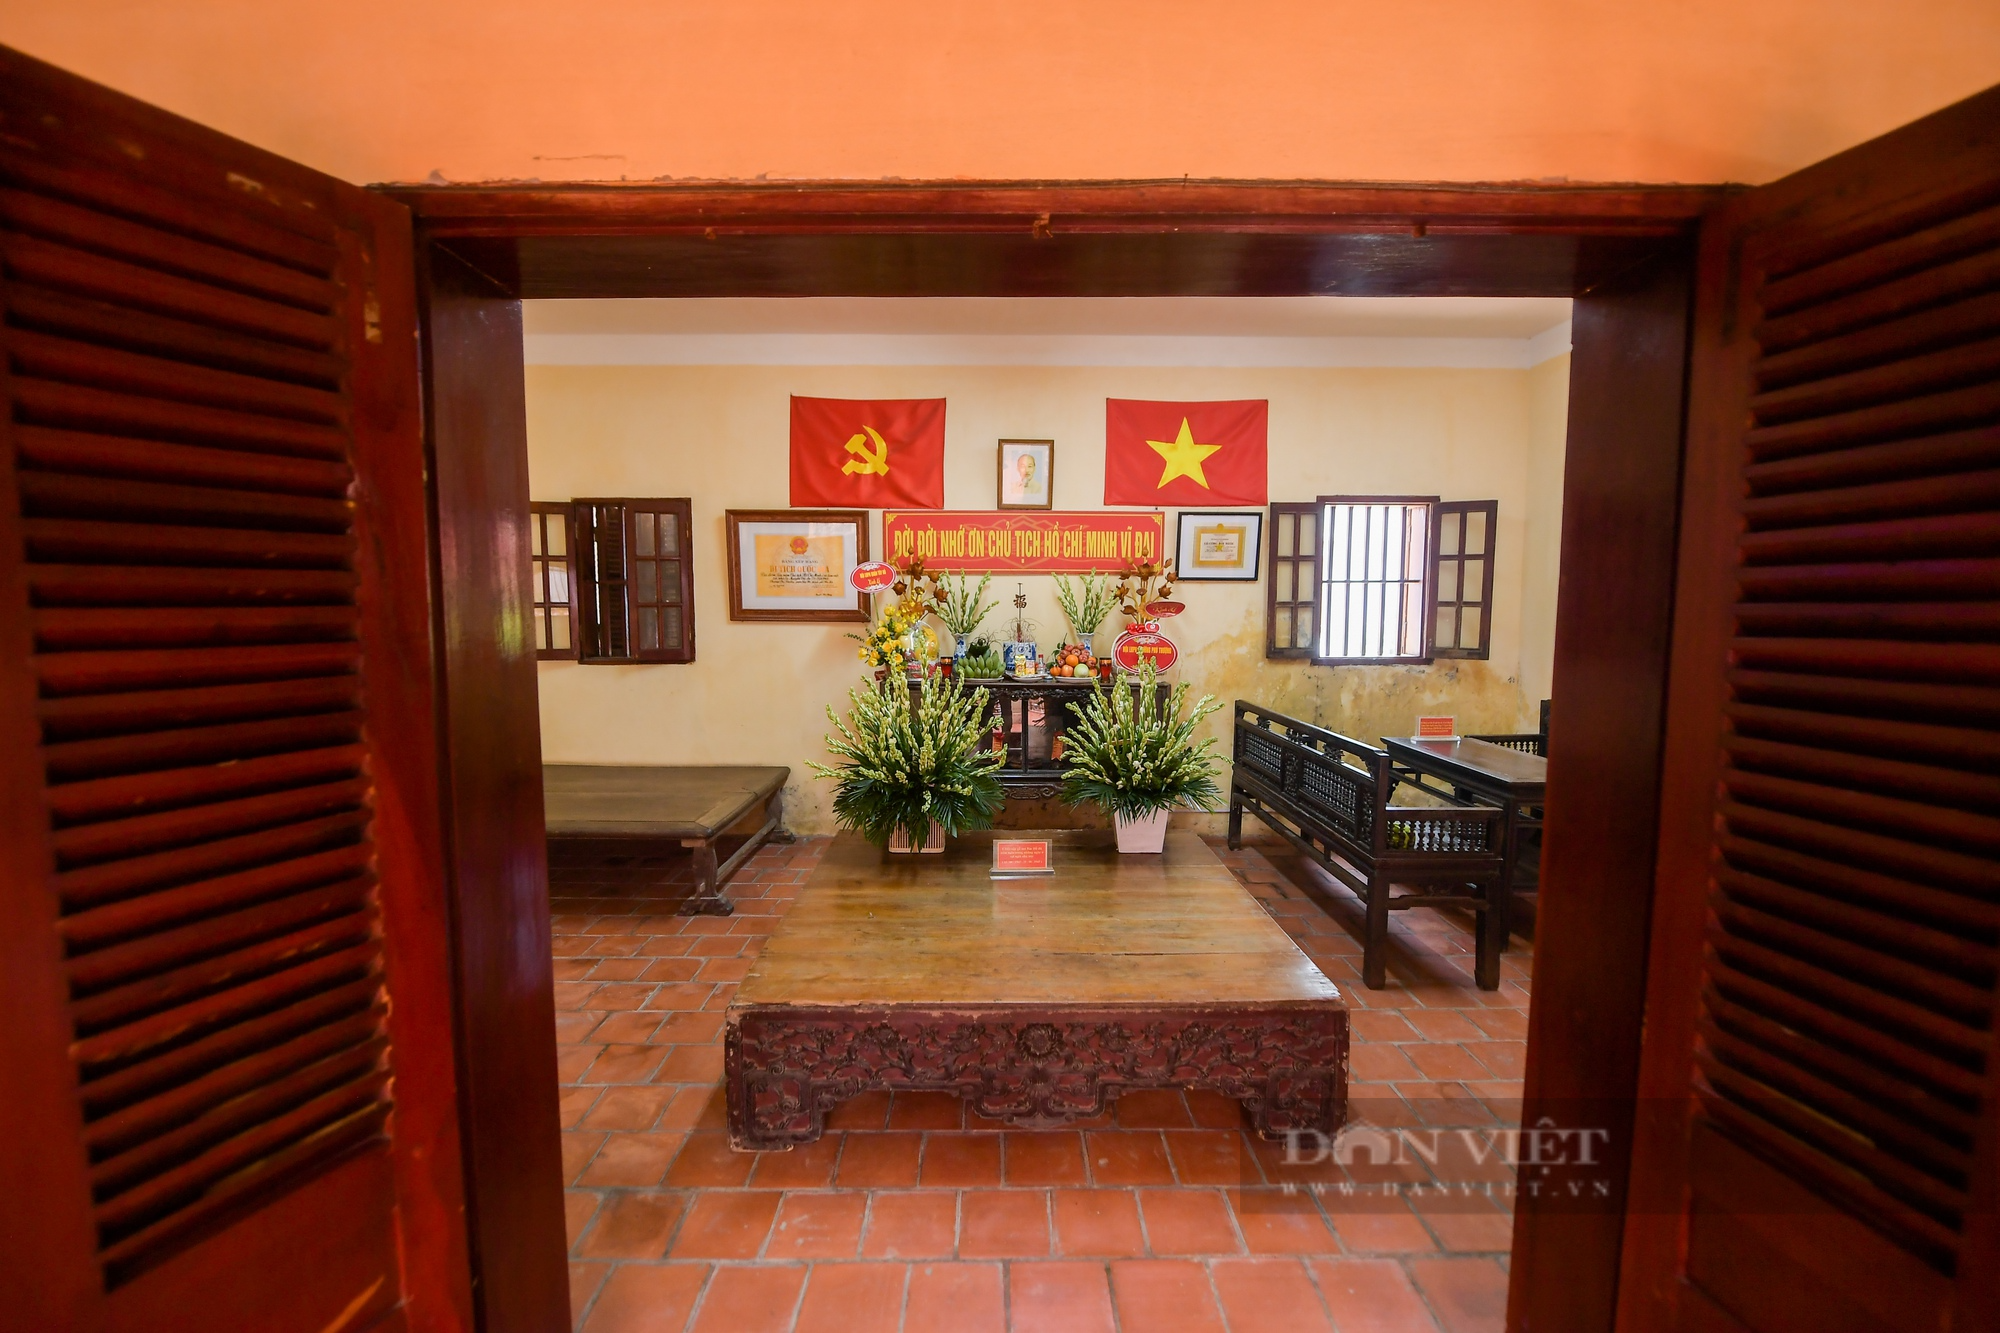 Bên trong căn nhà Bác Hồ từng ở tại Hà Nội, sau khi trở về từ chiến khu Việt Bắc - Ảnh 11.